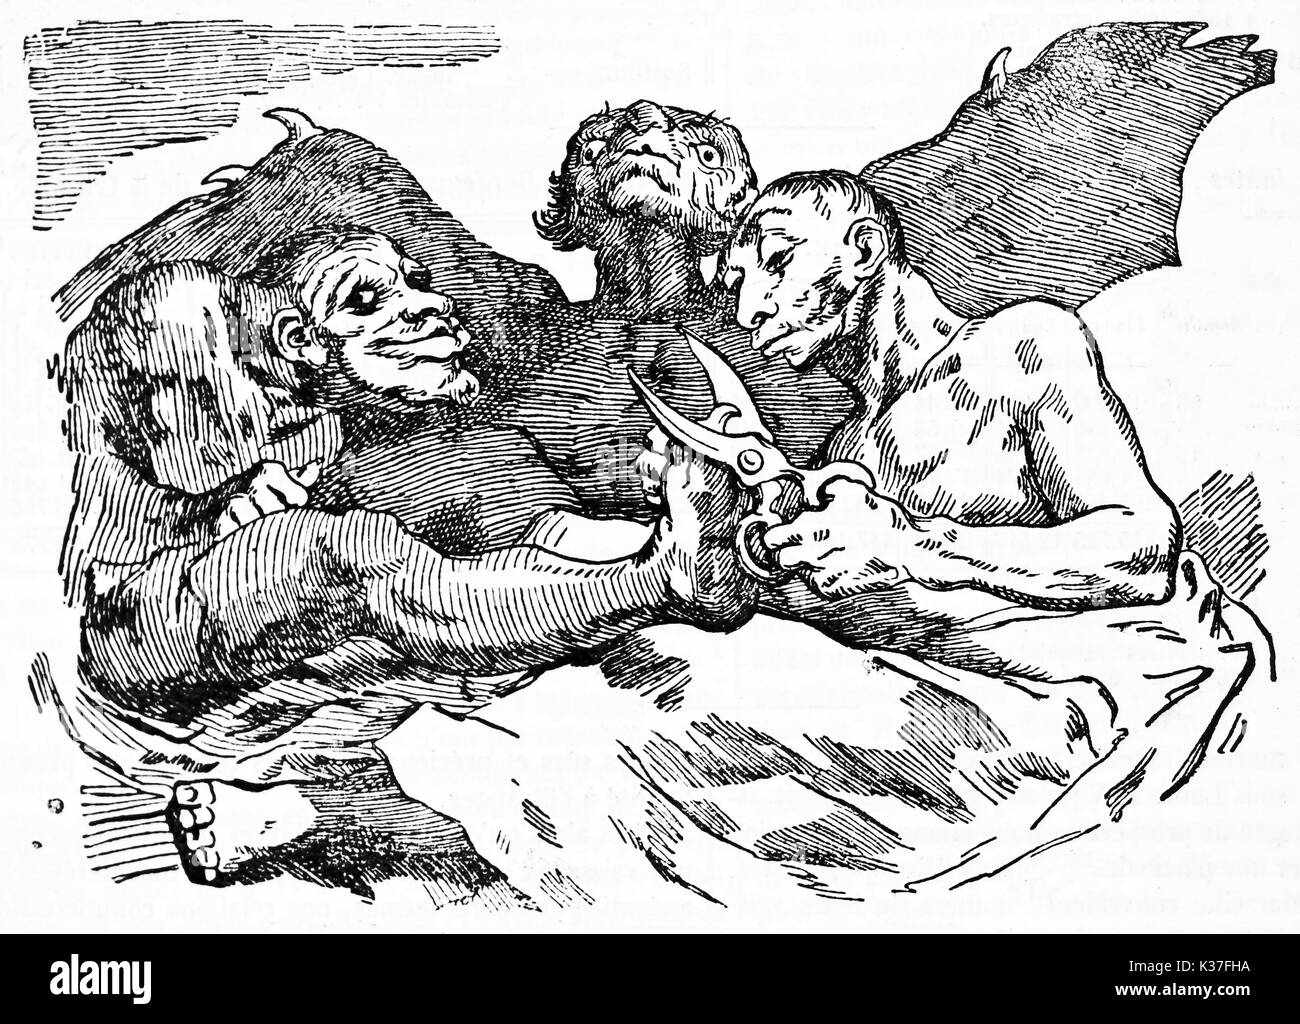 Coupe ongles Devils, ancienne cité médiévale contexte grotesque. Vieille caricature de Francisco Goya publié le magasin pittoresque Paris 1834 Banque D'Images